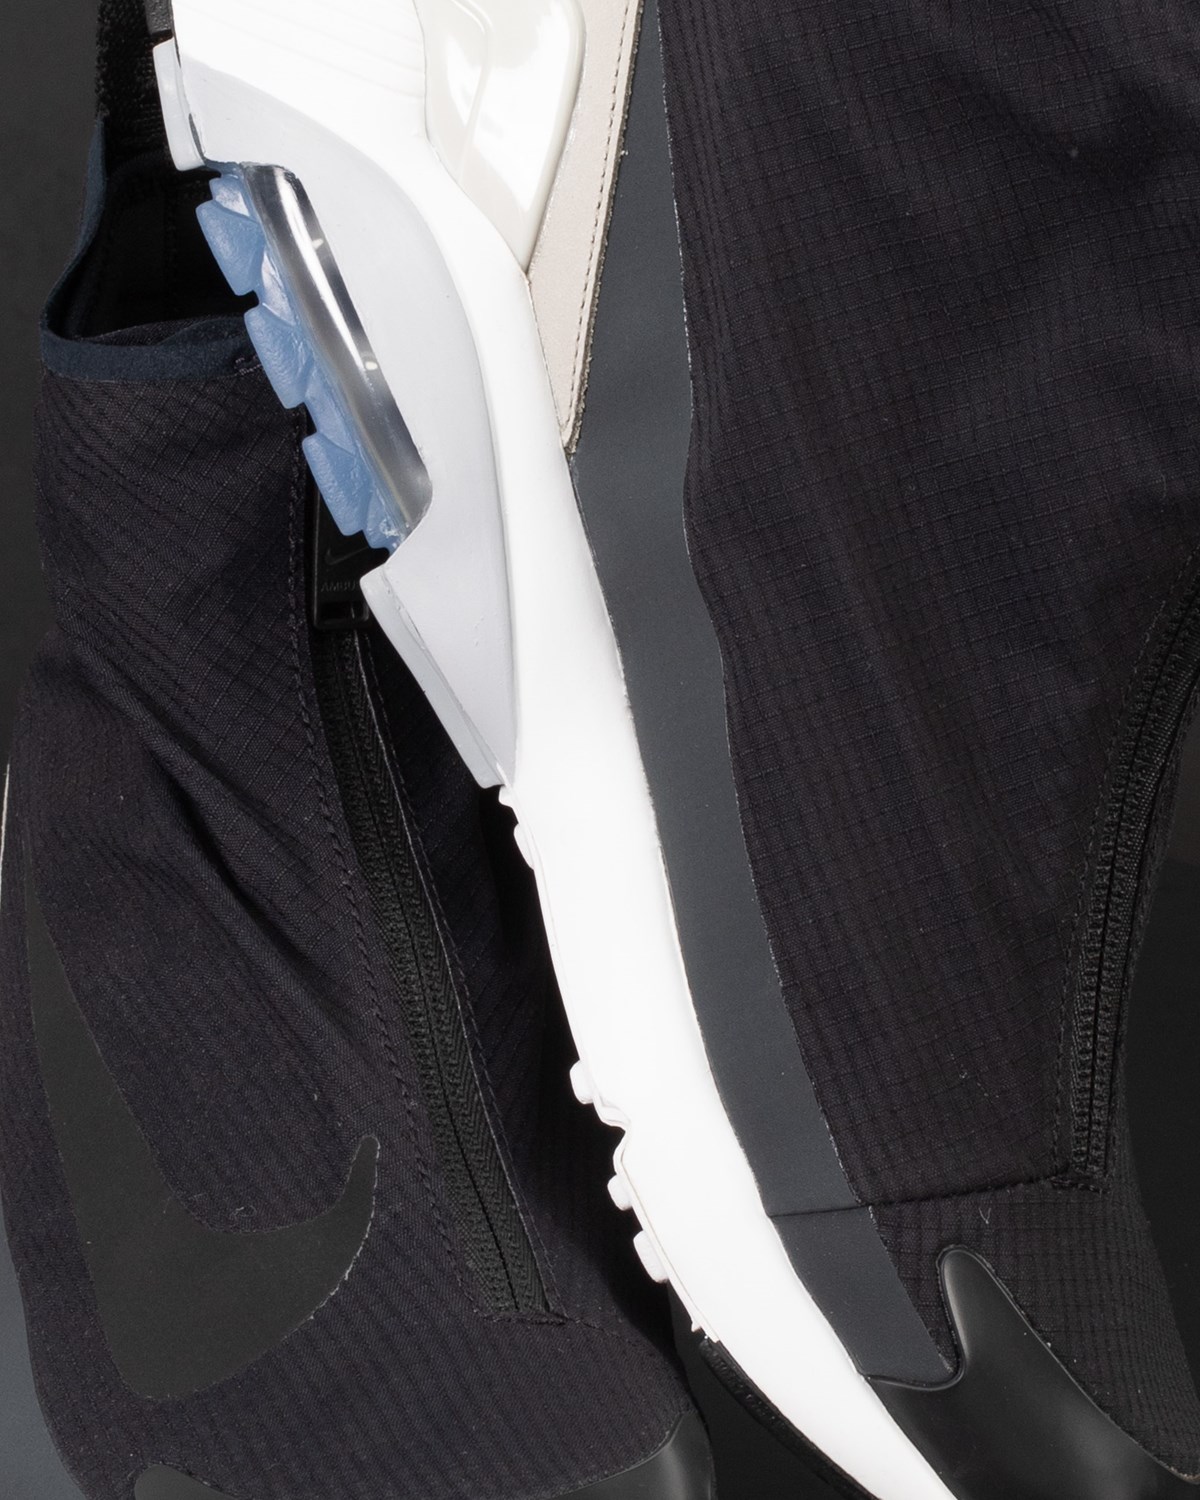 Air Max 180 HI / Ambush Nike Footwear Sneakers Black